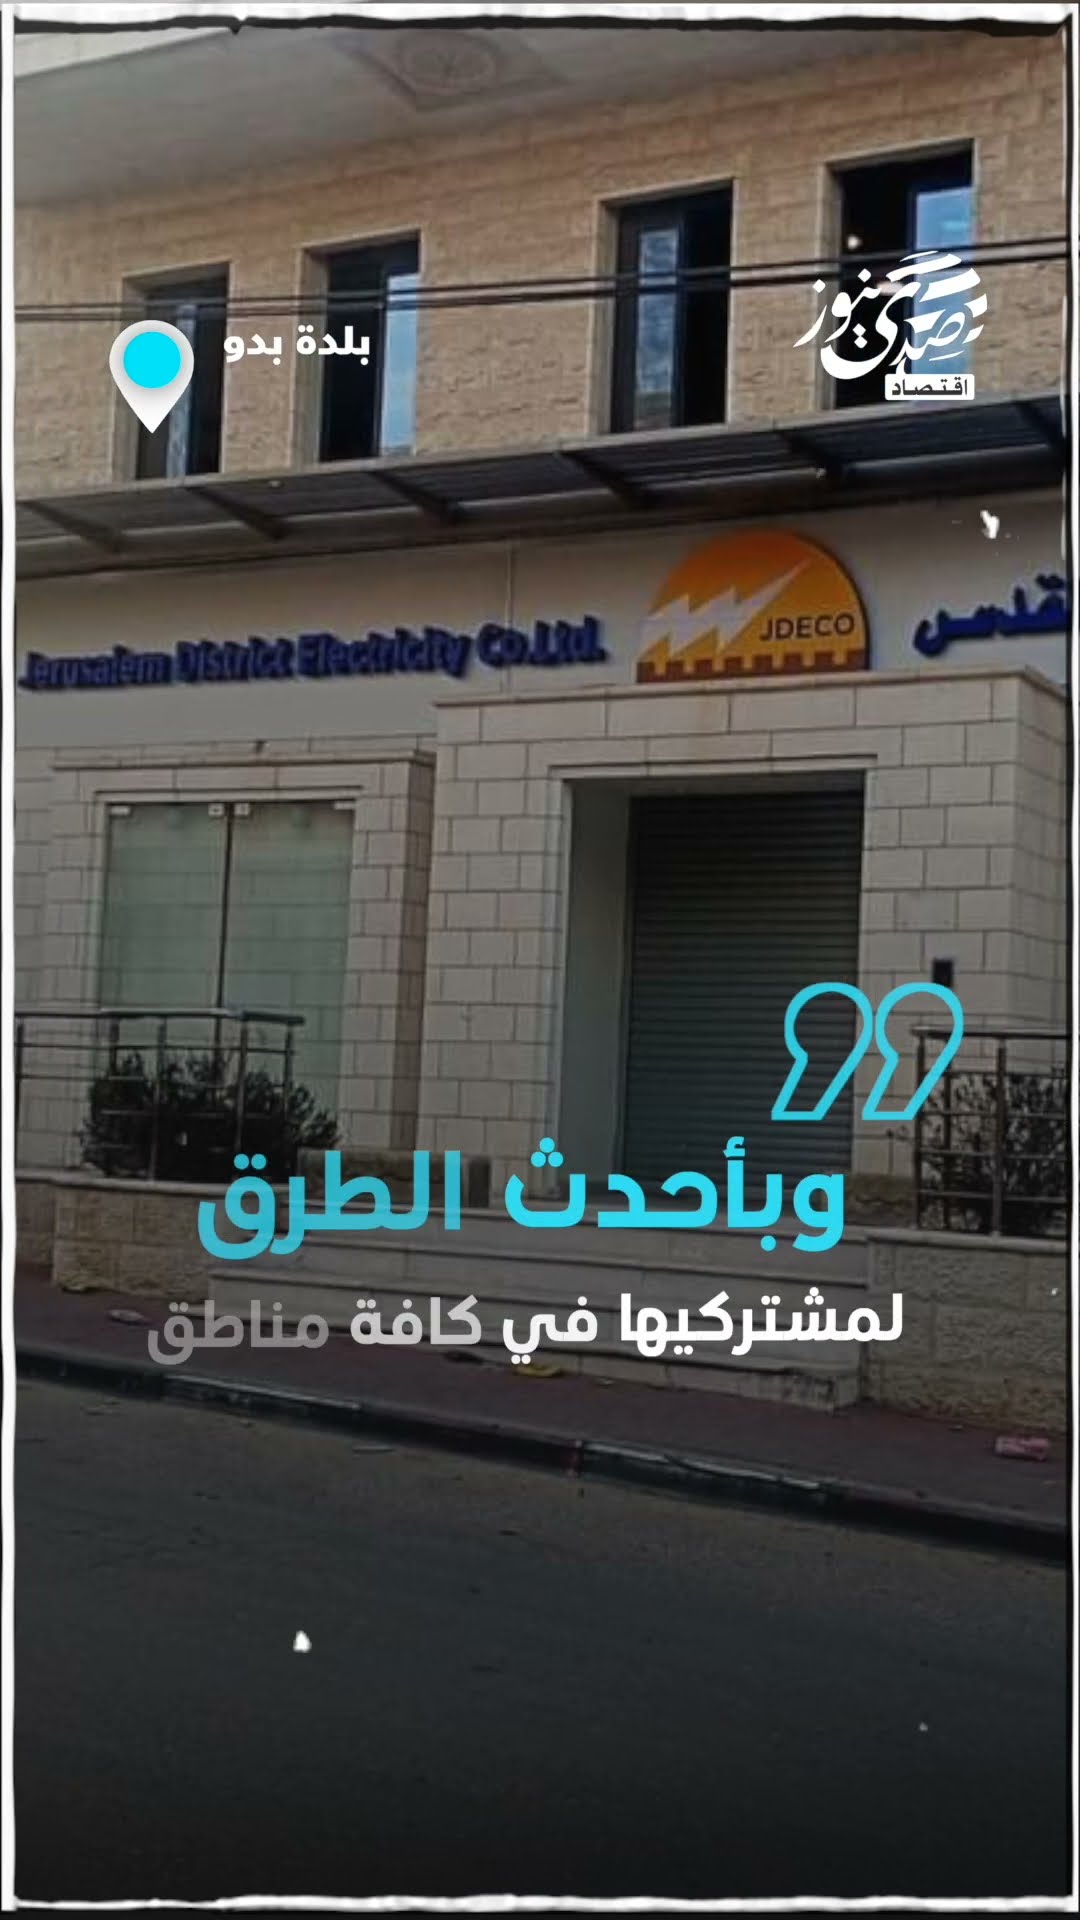 صدى نيوز | "كهرباء القدس" تفتتح مكتبها الجديد في بلدة بدو